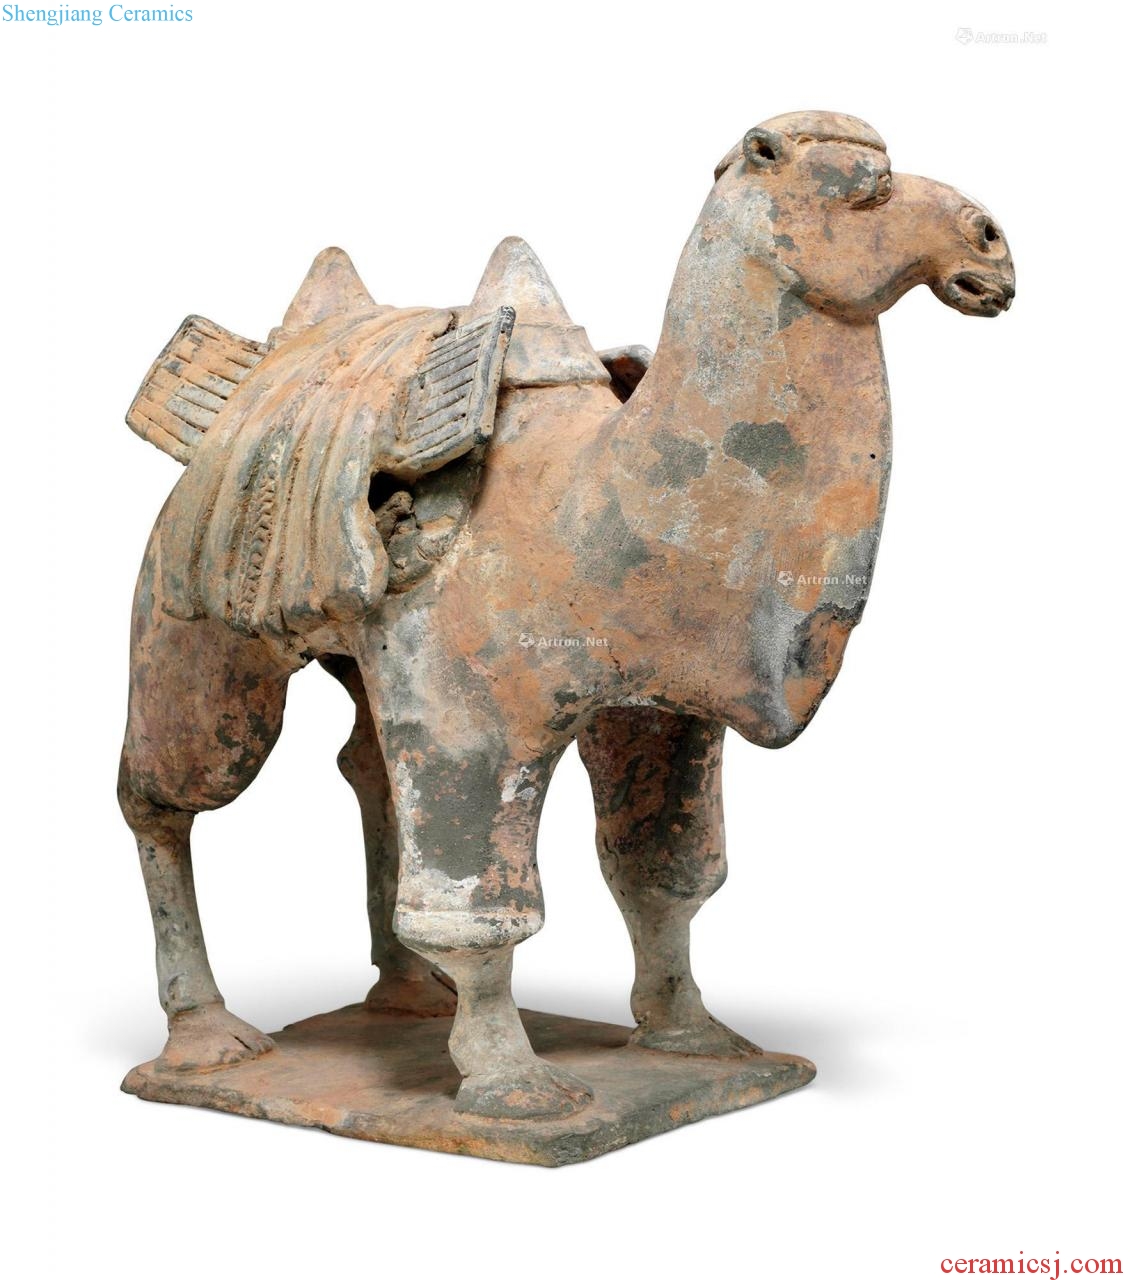 Beiqi ash glaze camels